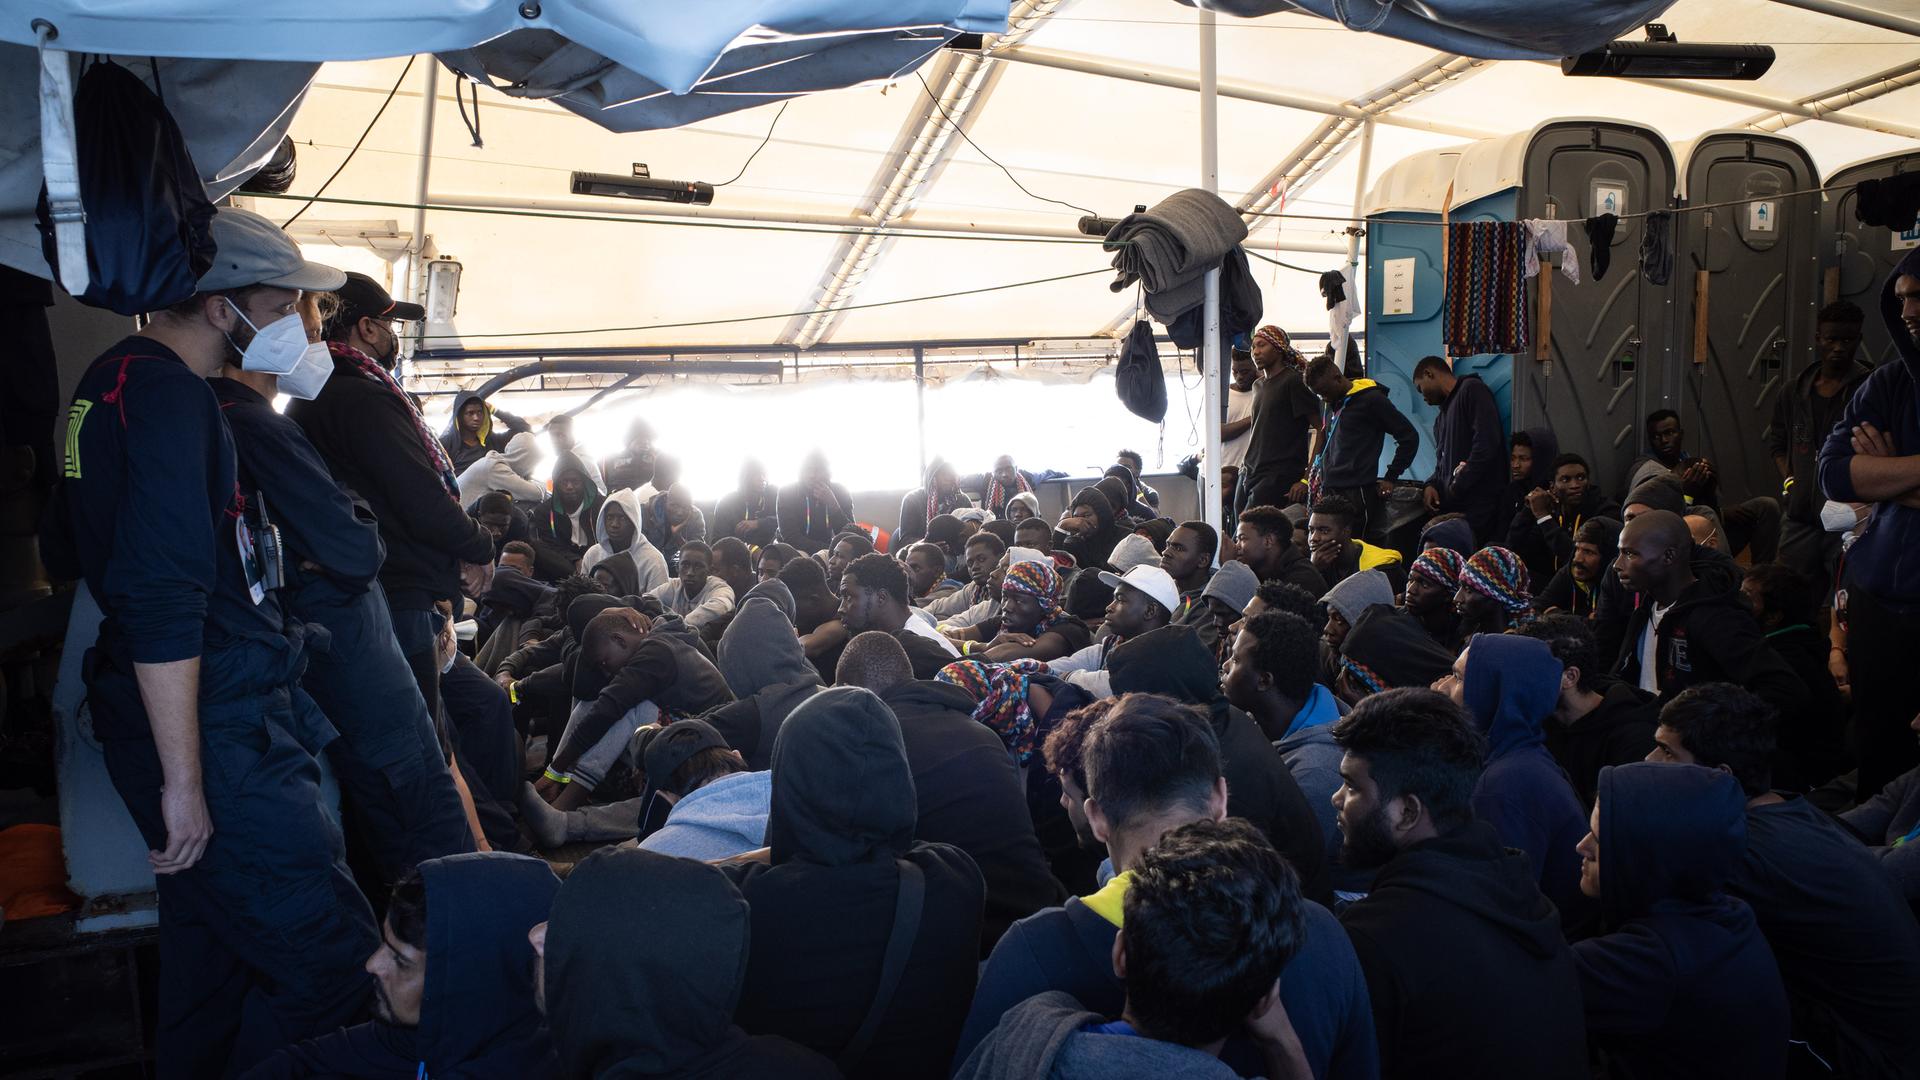 Die von der Hilfsorganisation SOS Humanity herausgegebene Aufnahme zeigt aus dem Mittelmeer gerettete Flüchtlinge, die an Deck des deutschen Seenotrettungsschiffes "Humanity 1" sitzen.